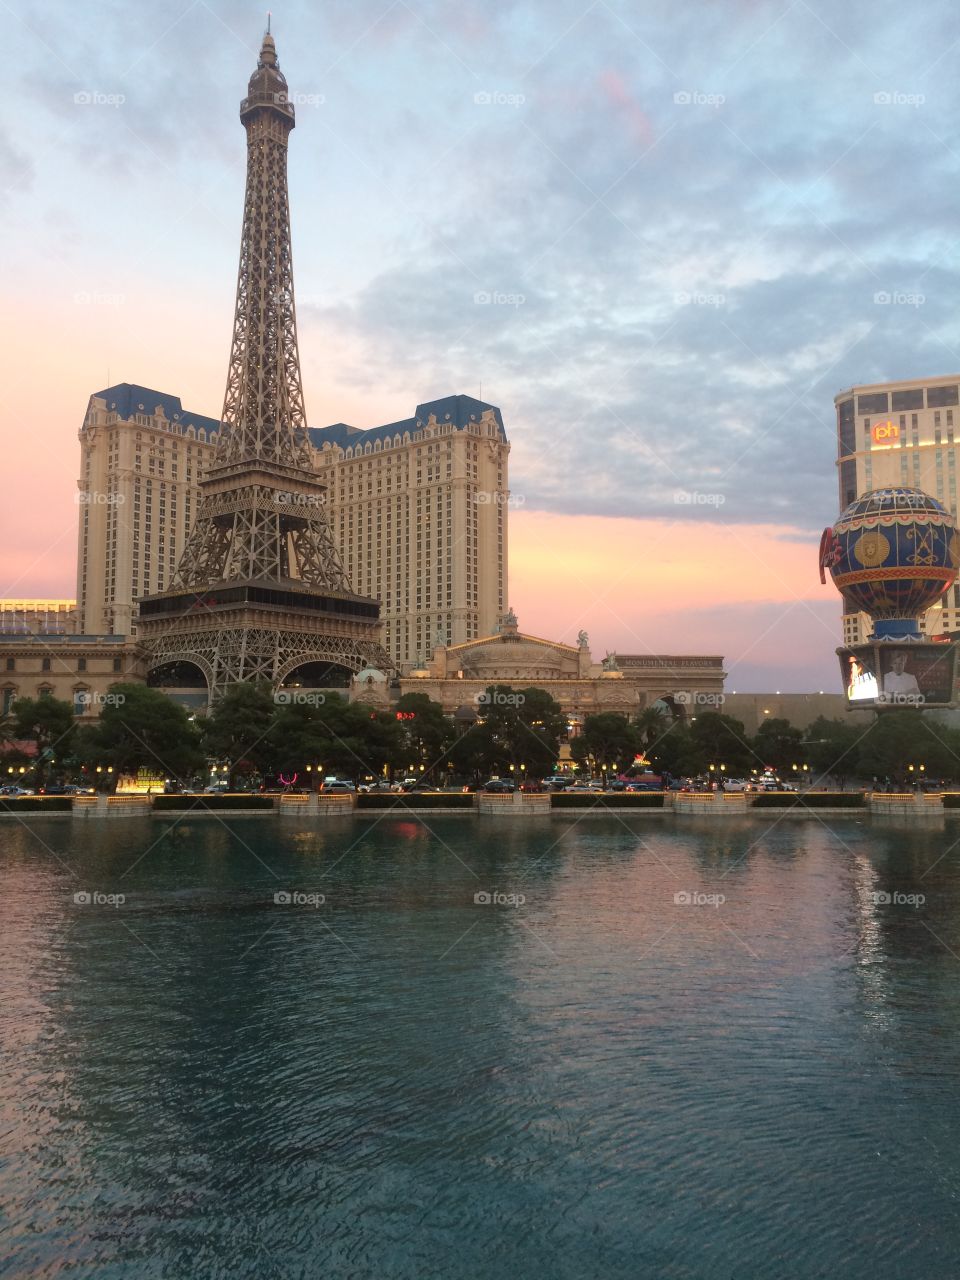 Las Vegas! Paris hotel !